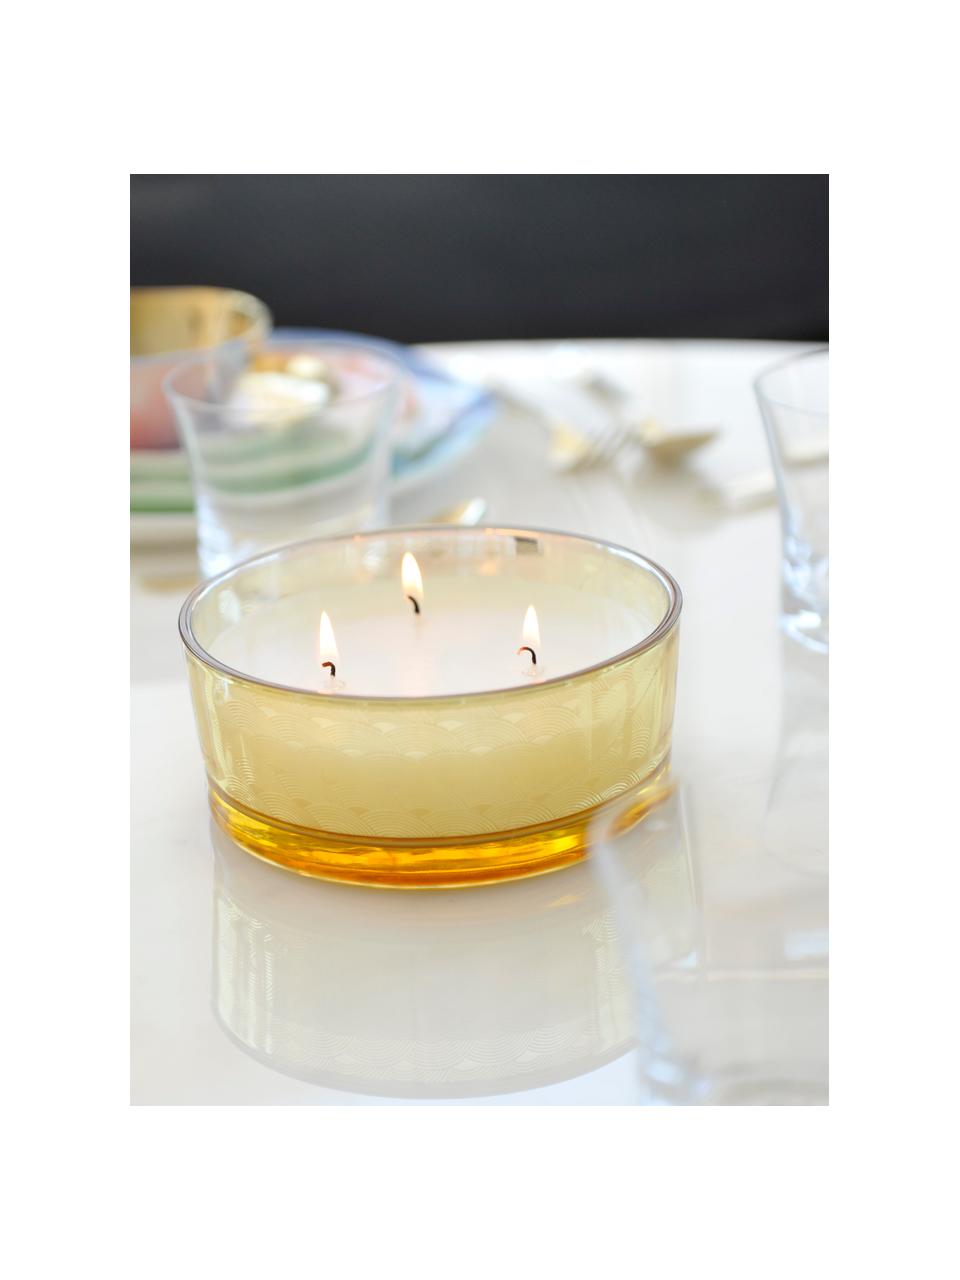 Dreidocht-Duftkerze Sunny (Vanille), Behälter: Glas, Bernsteinfarben, transparent, Goldfarben, Ø 15 x H 6 cm